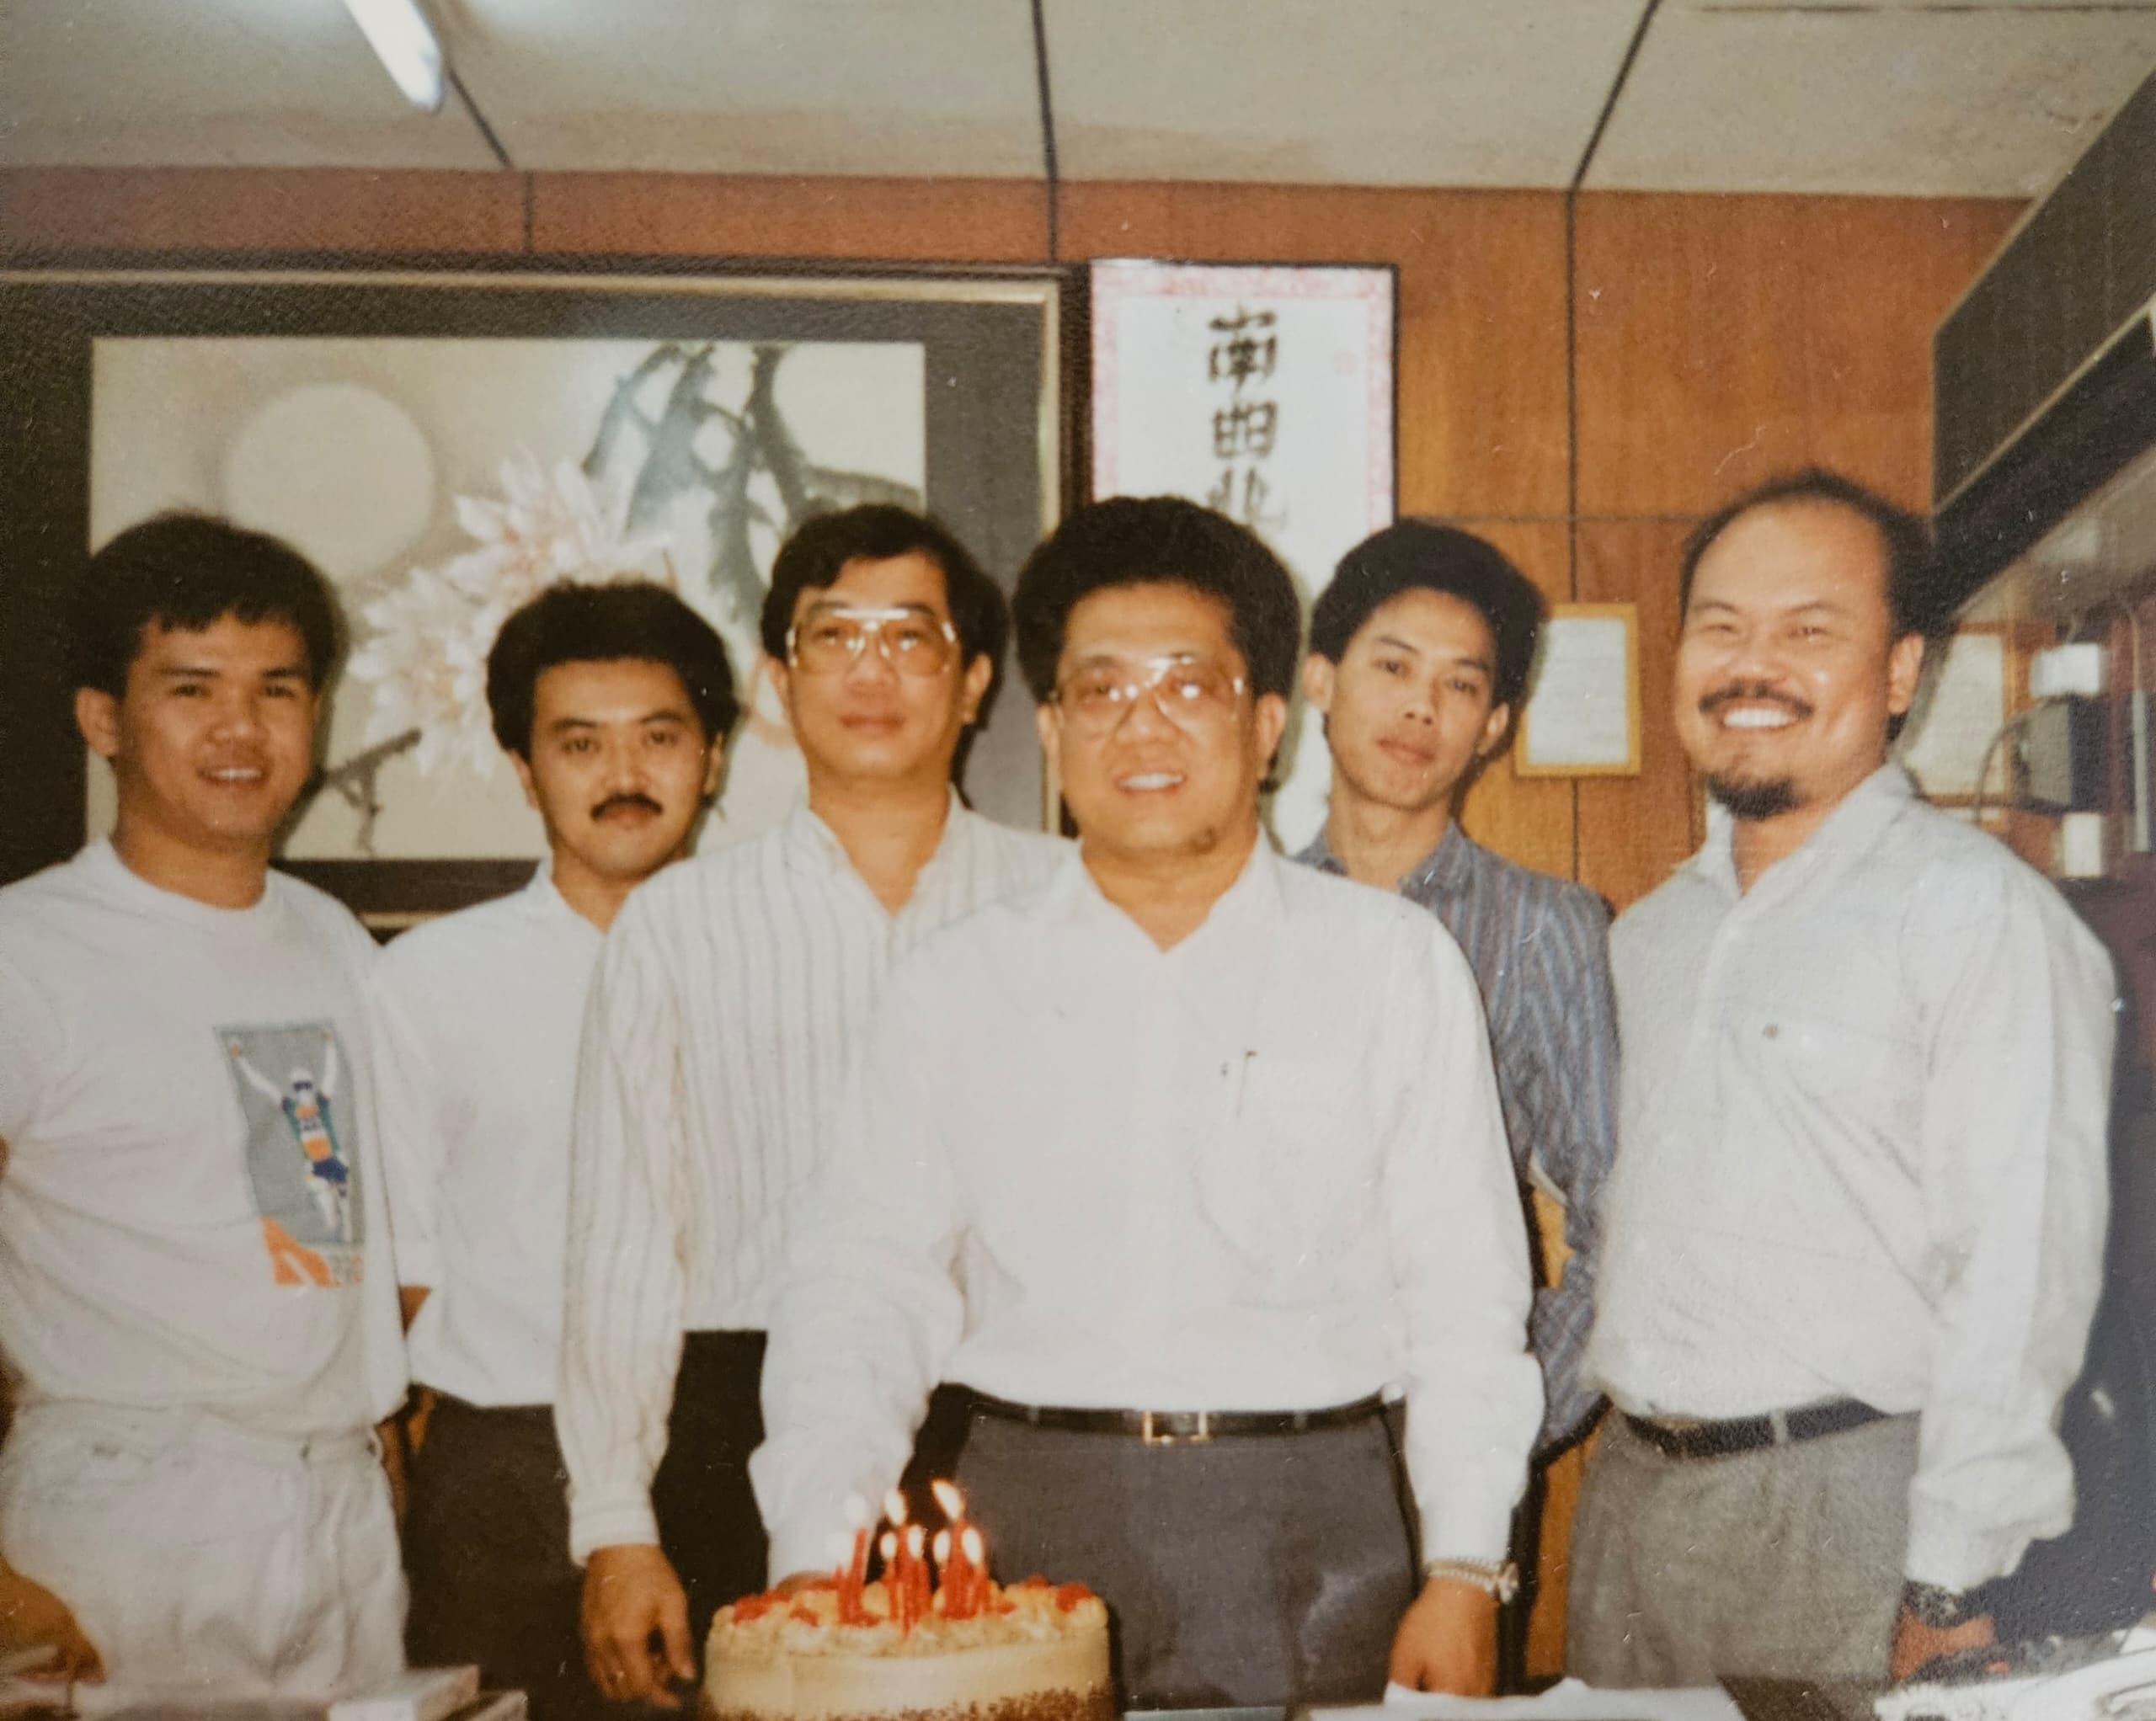 当年身为“南方唱片”中文部主管的谢木（右一）与颜华益（右三）、马来部主管Dennis（右二）、总经理Frankie（左三），以及另外两位分别来自会计部和营销部的同事合影。（照片由谢木提供）